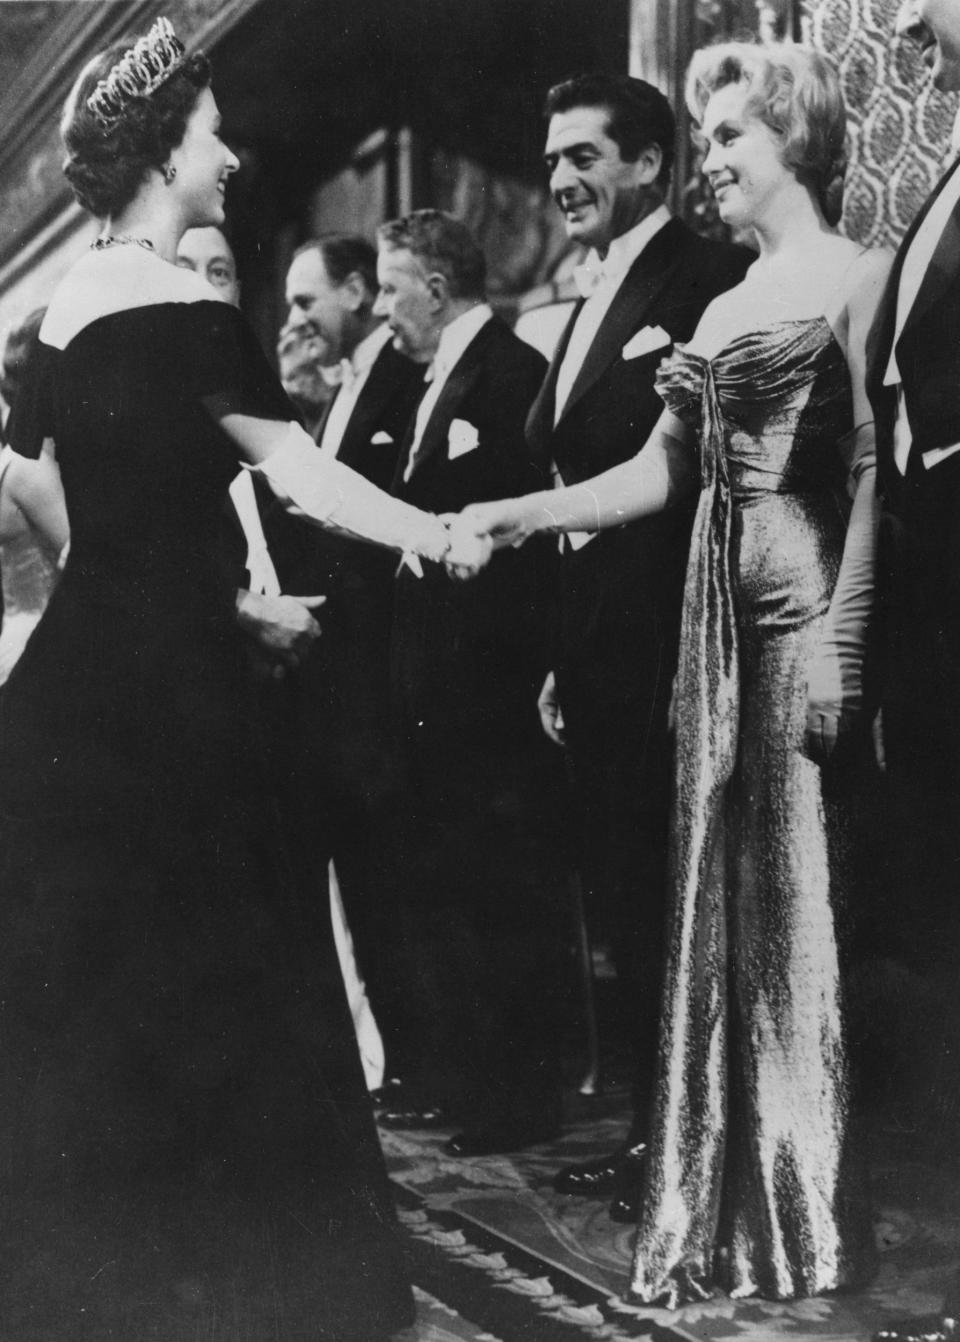 Η βασίλισσα Ελισάβετ χαιρετά τους επισκέπτες του Χόλιγουντ, συμπεριλαμβανομένης της Μέριλιν Μονρόε με μαύρο βελούδινο φόρεμα του Norman Hartnell το 1956